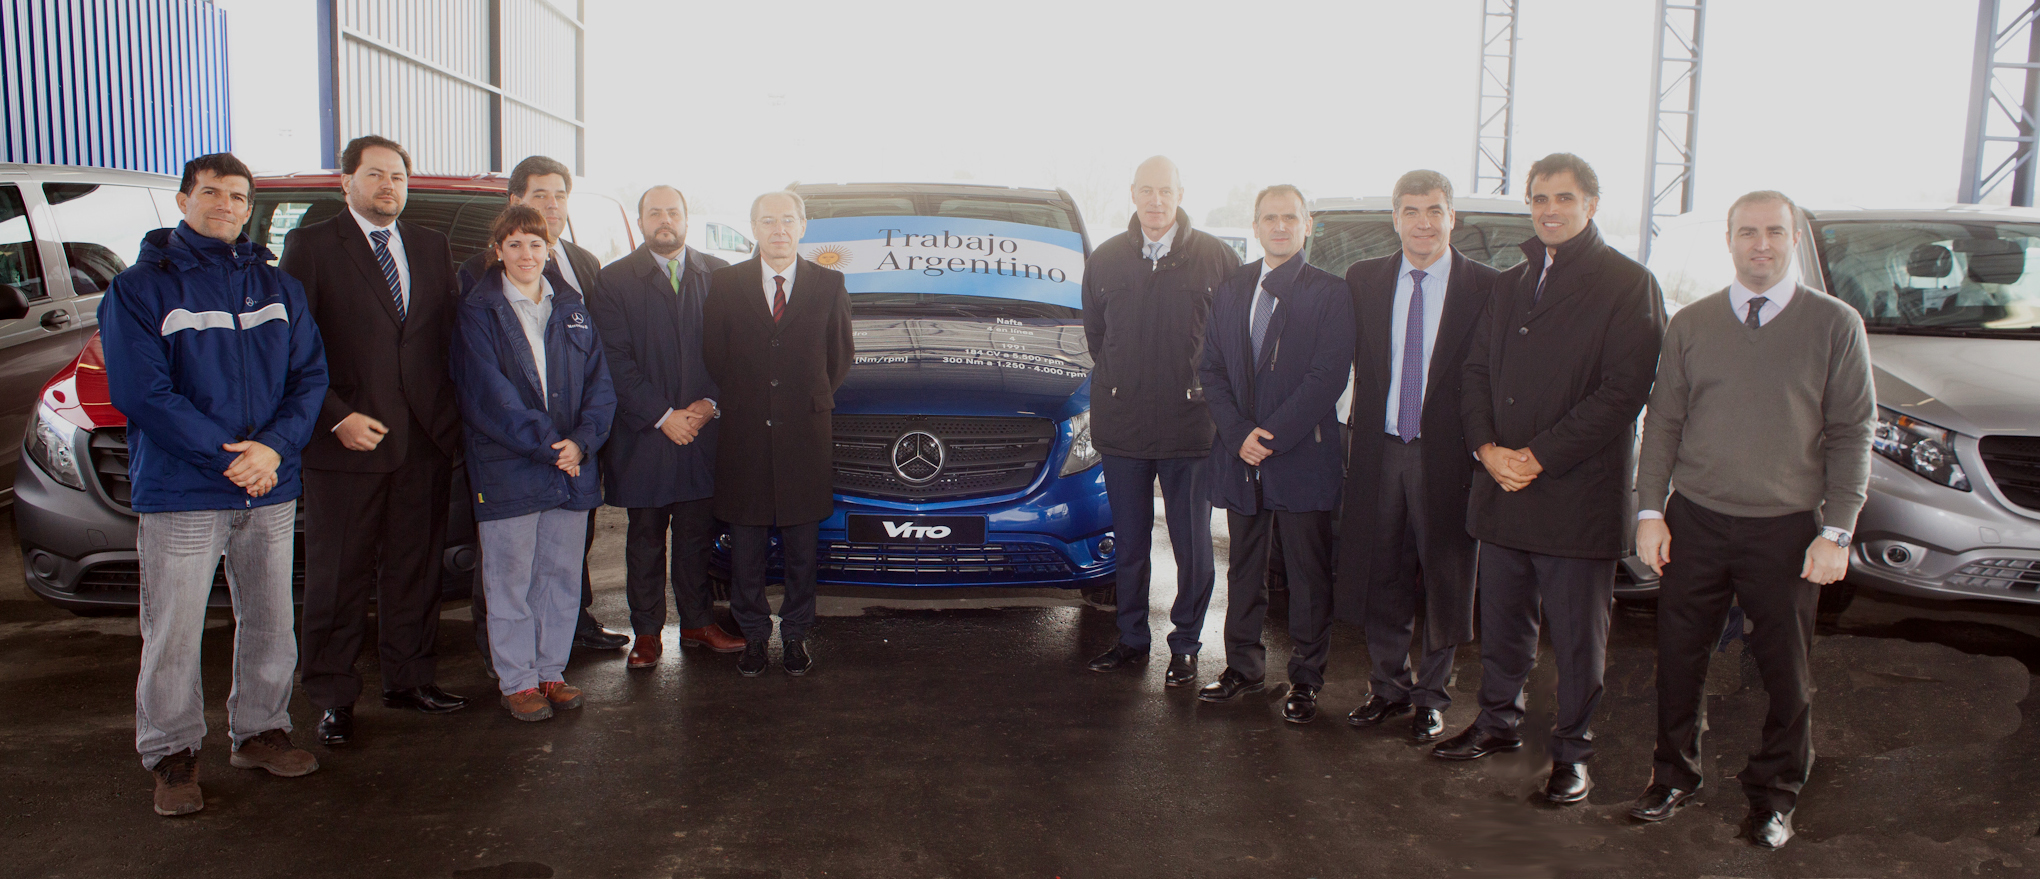 Mercedes-Benz inauguró playa de logística de vehículos